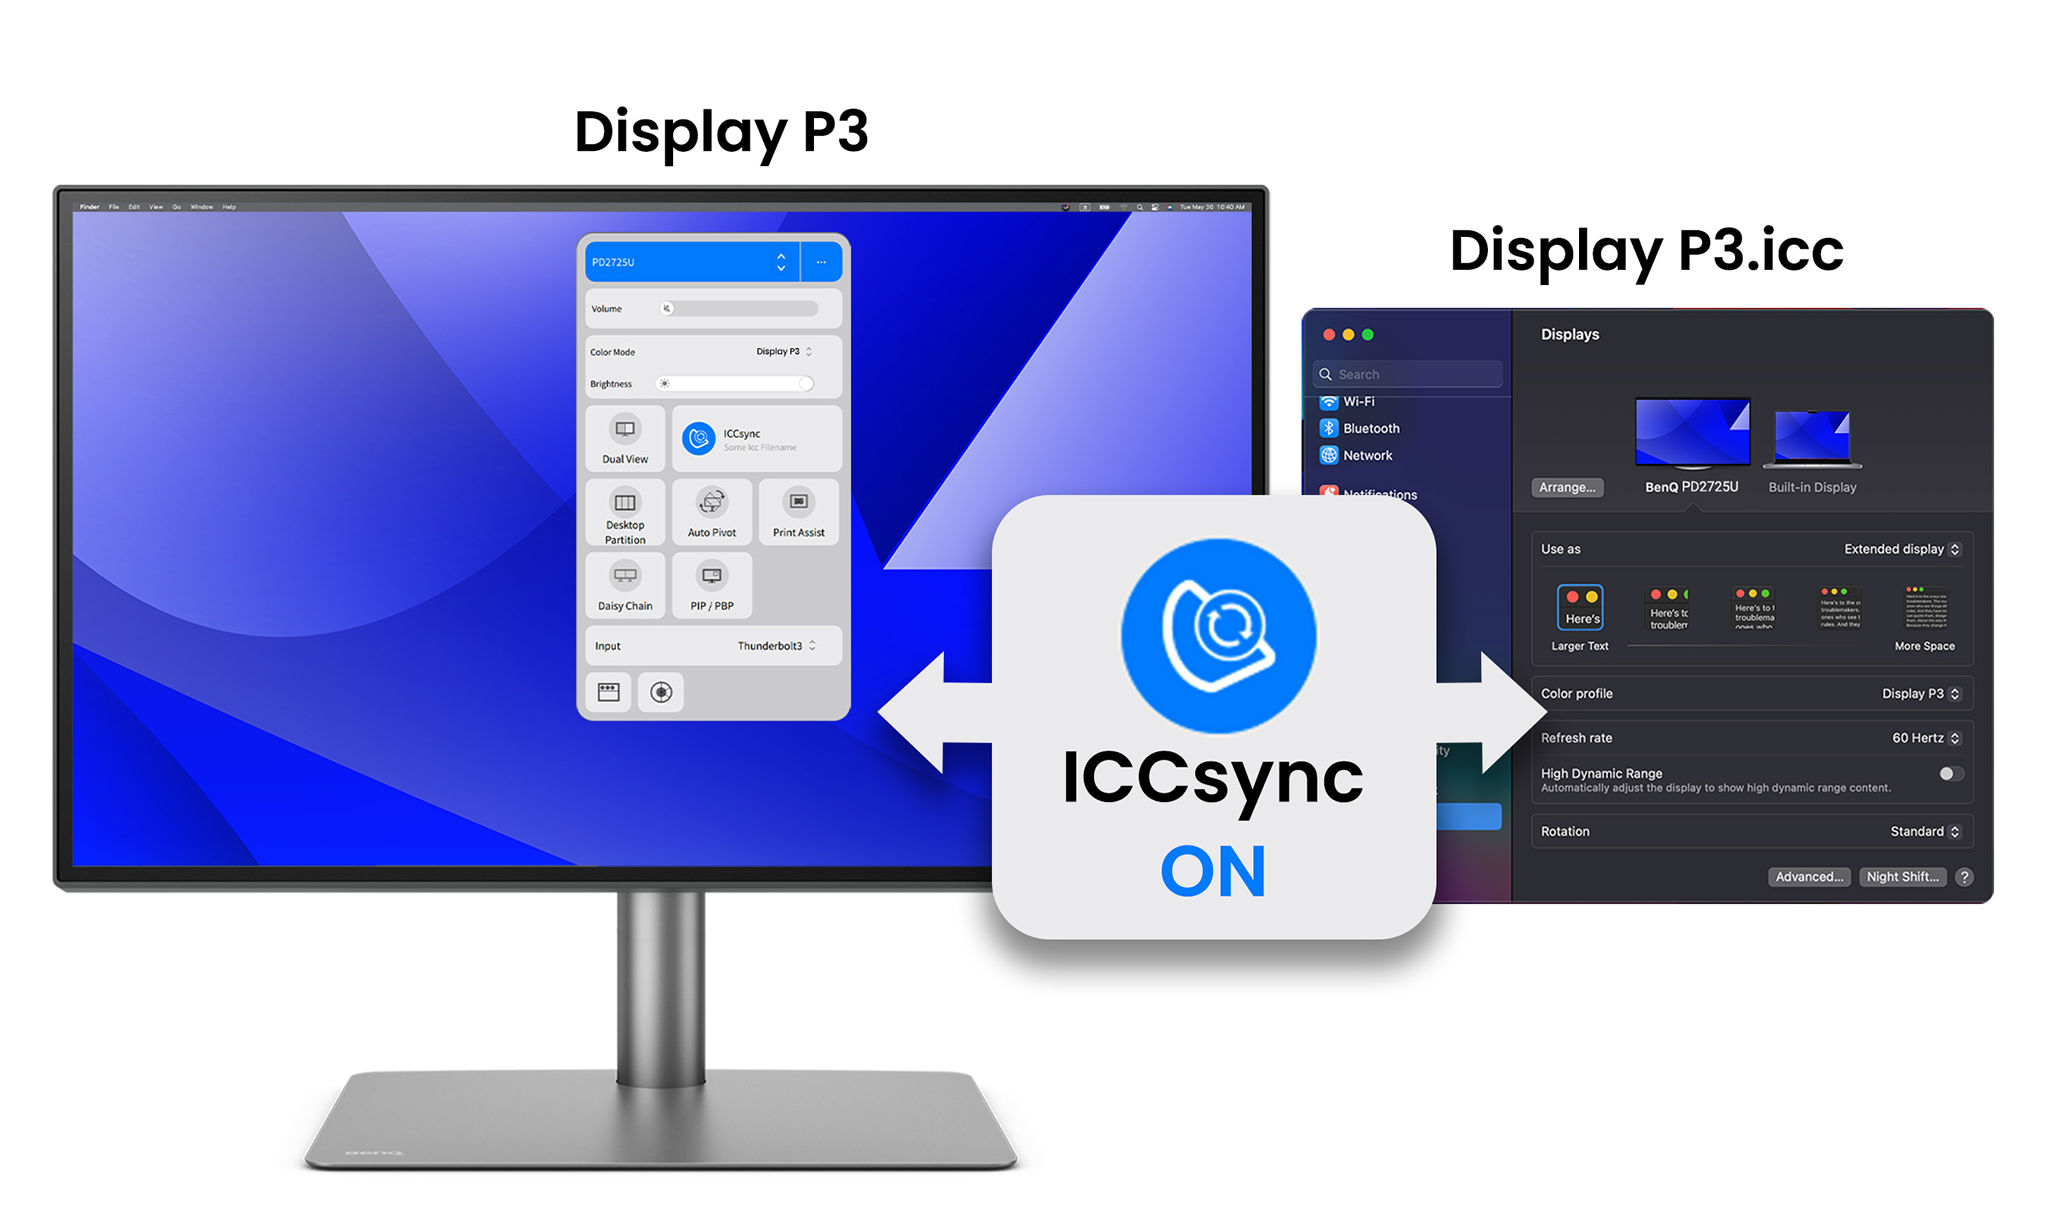 Функція BenQ ICCsync автоматично зіставляє та синхронізує профілі ICC на моніторі, коли ви змінюєте колірні режими, а також між екраном Mac і монітором BenQ. Усе це робиться миттєво.